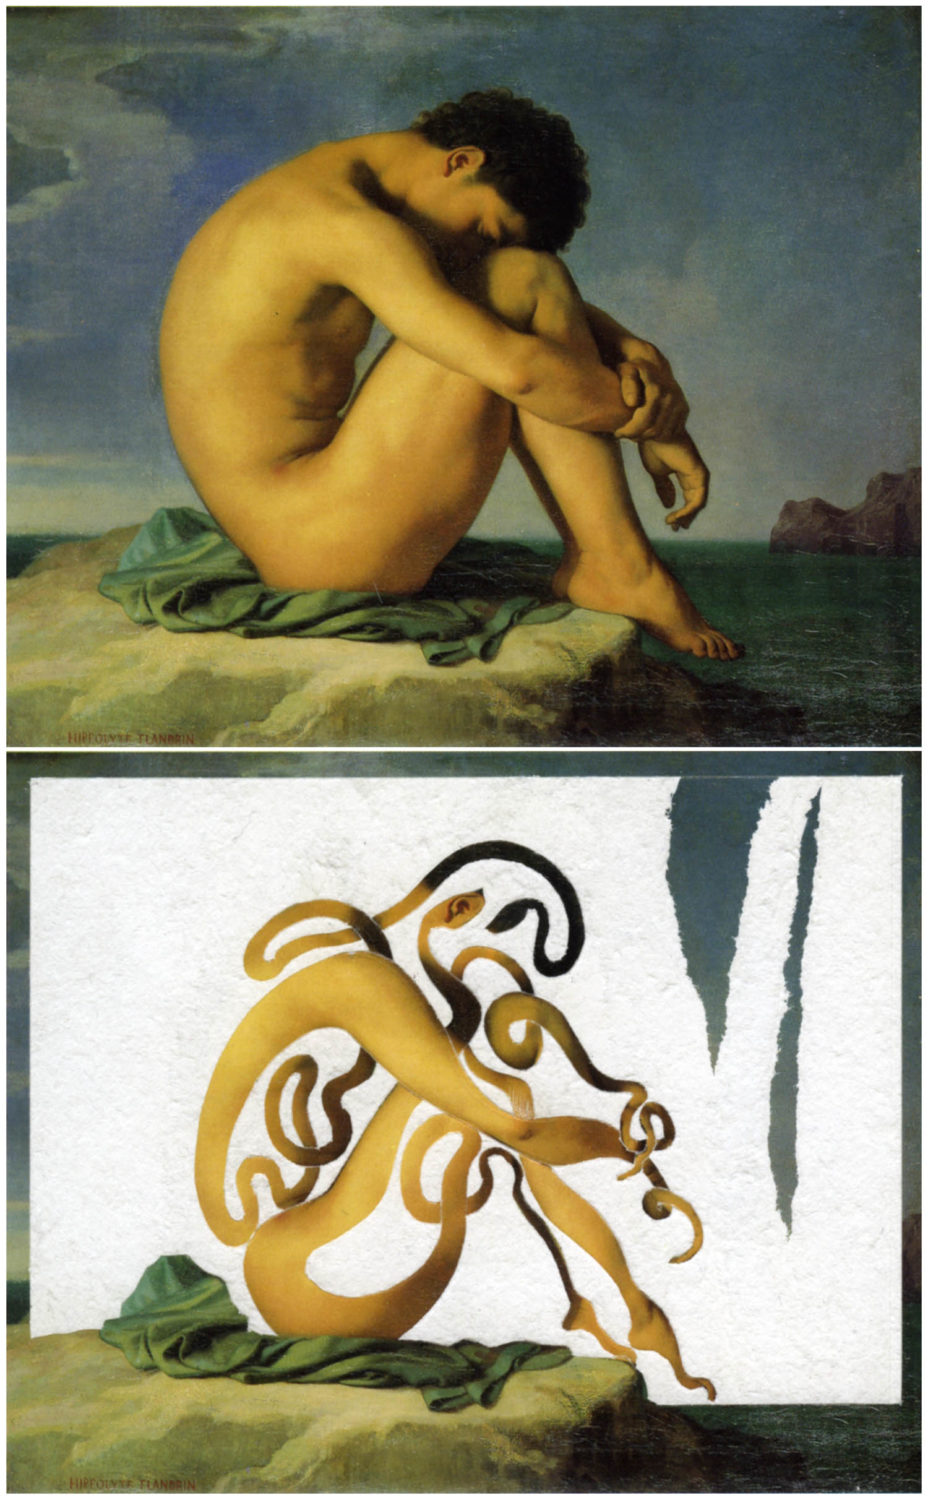 Le sommeil de la raison. Carte postale du tableau d’Hippolyte Flandrin « Jeune homme nu assis » du musée du Louvre, rectifiée par Max de Larminat © tous droits réservés. En guise de titre pour ce tableau de jeune homme nu en proie à ses serpents intimes, j’emprunte sans vergogne celui de la célèbre gravure de Goya « Le sommeil de la raison engendre des monstres ».